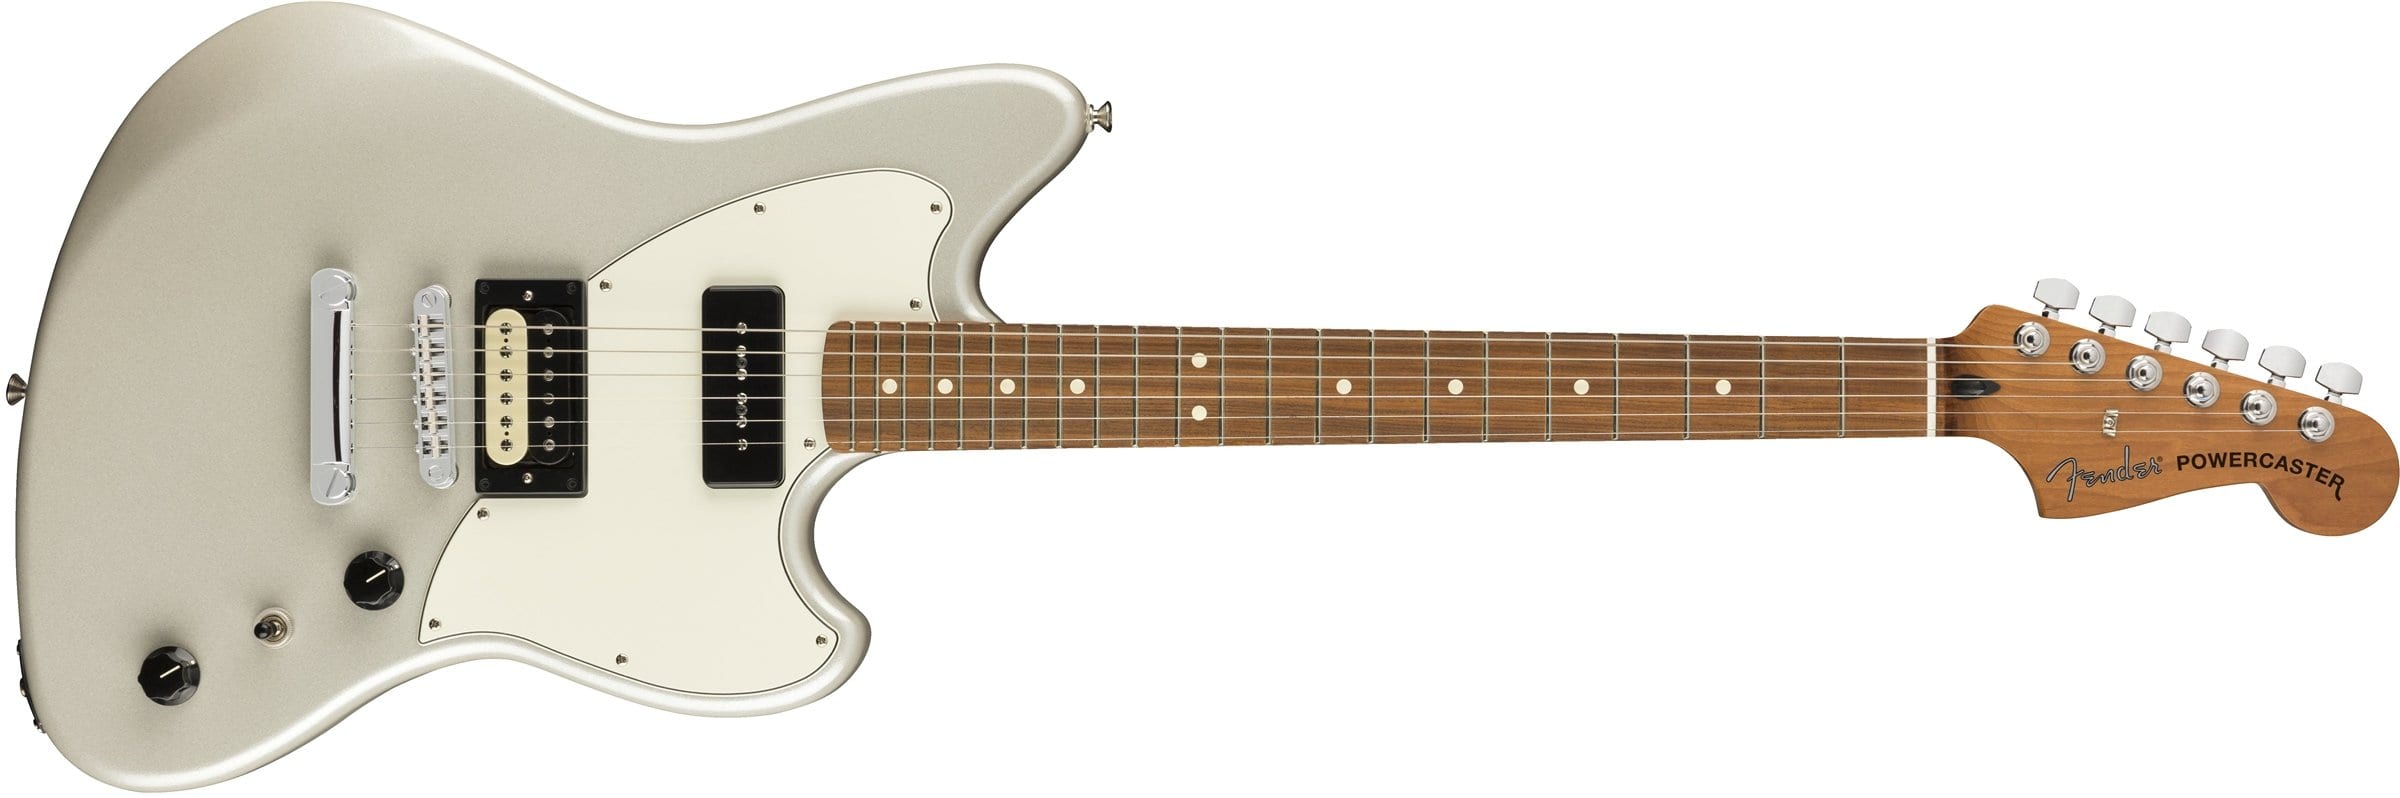 Fender AlAlternate Reality Powercaster in Opal White